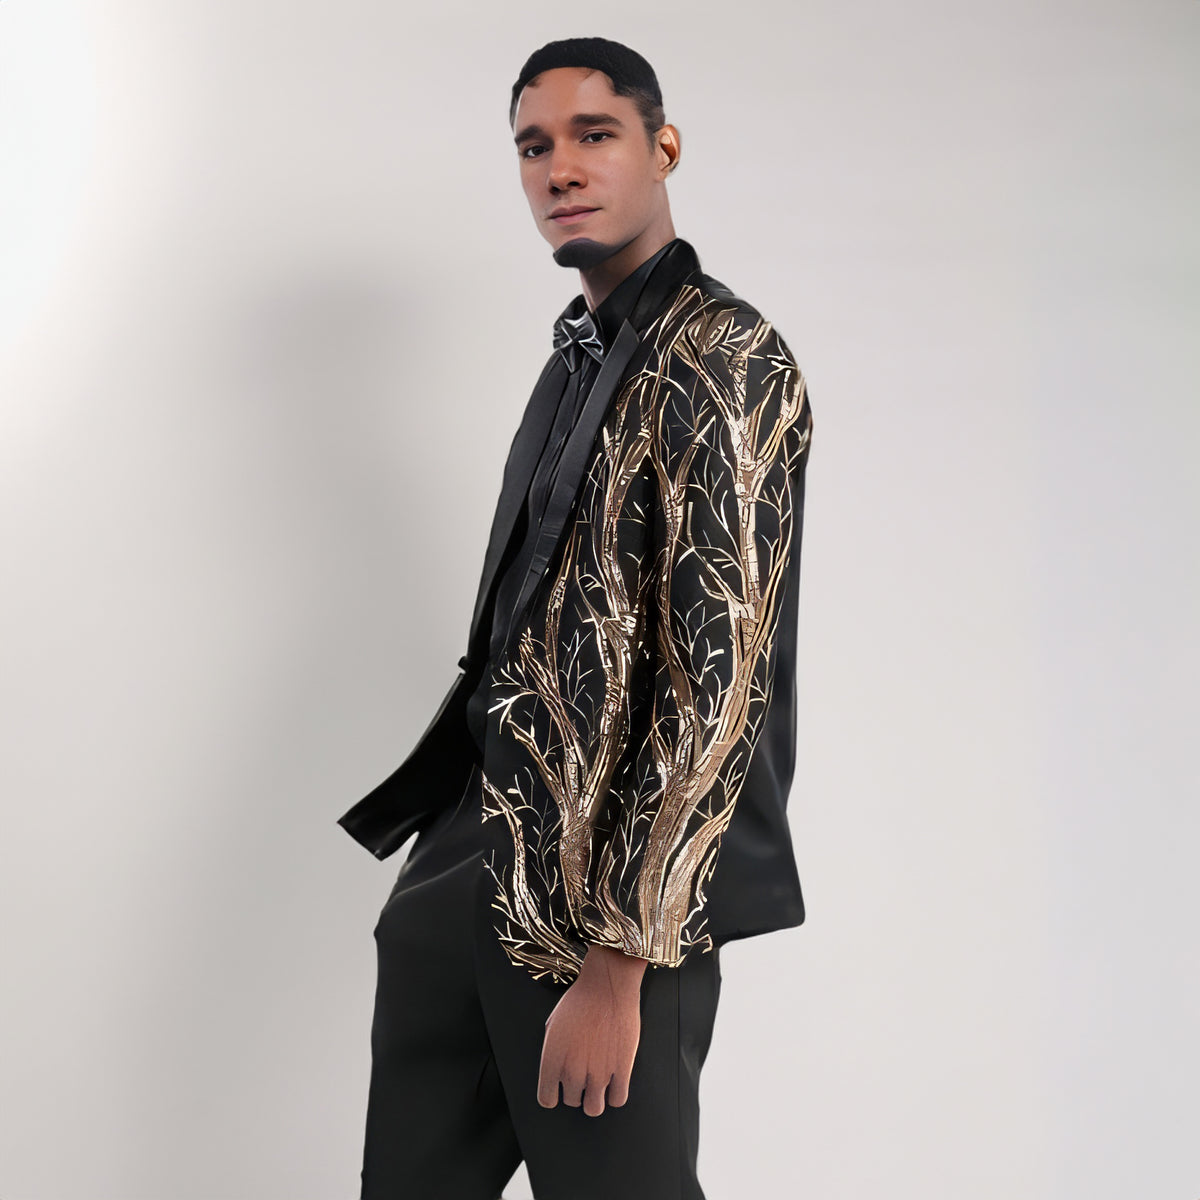 Men's 2 Pieces Sequin Suit Golden Branches Pattern Black Tuxedo